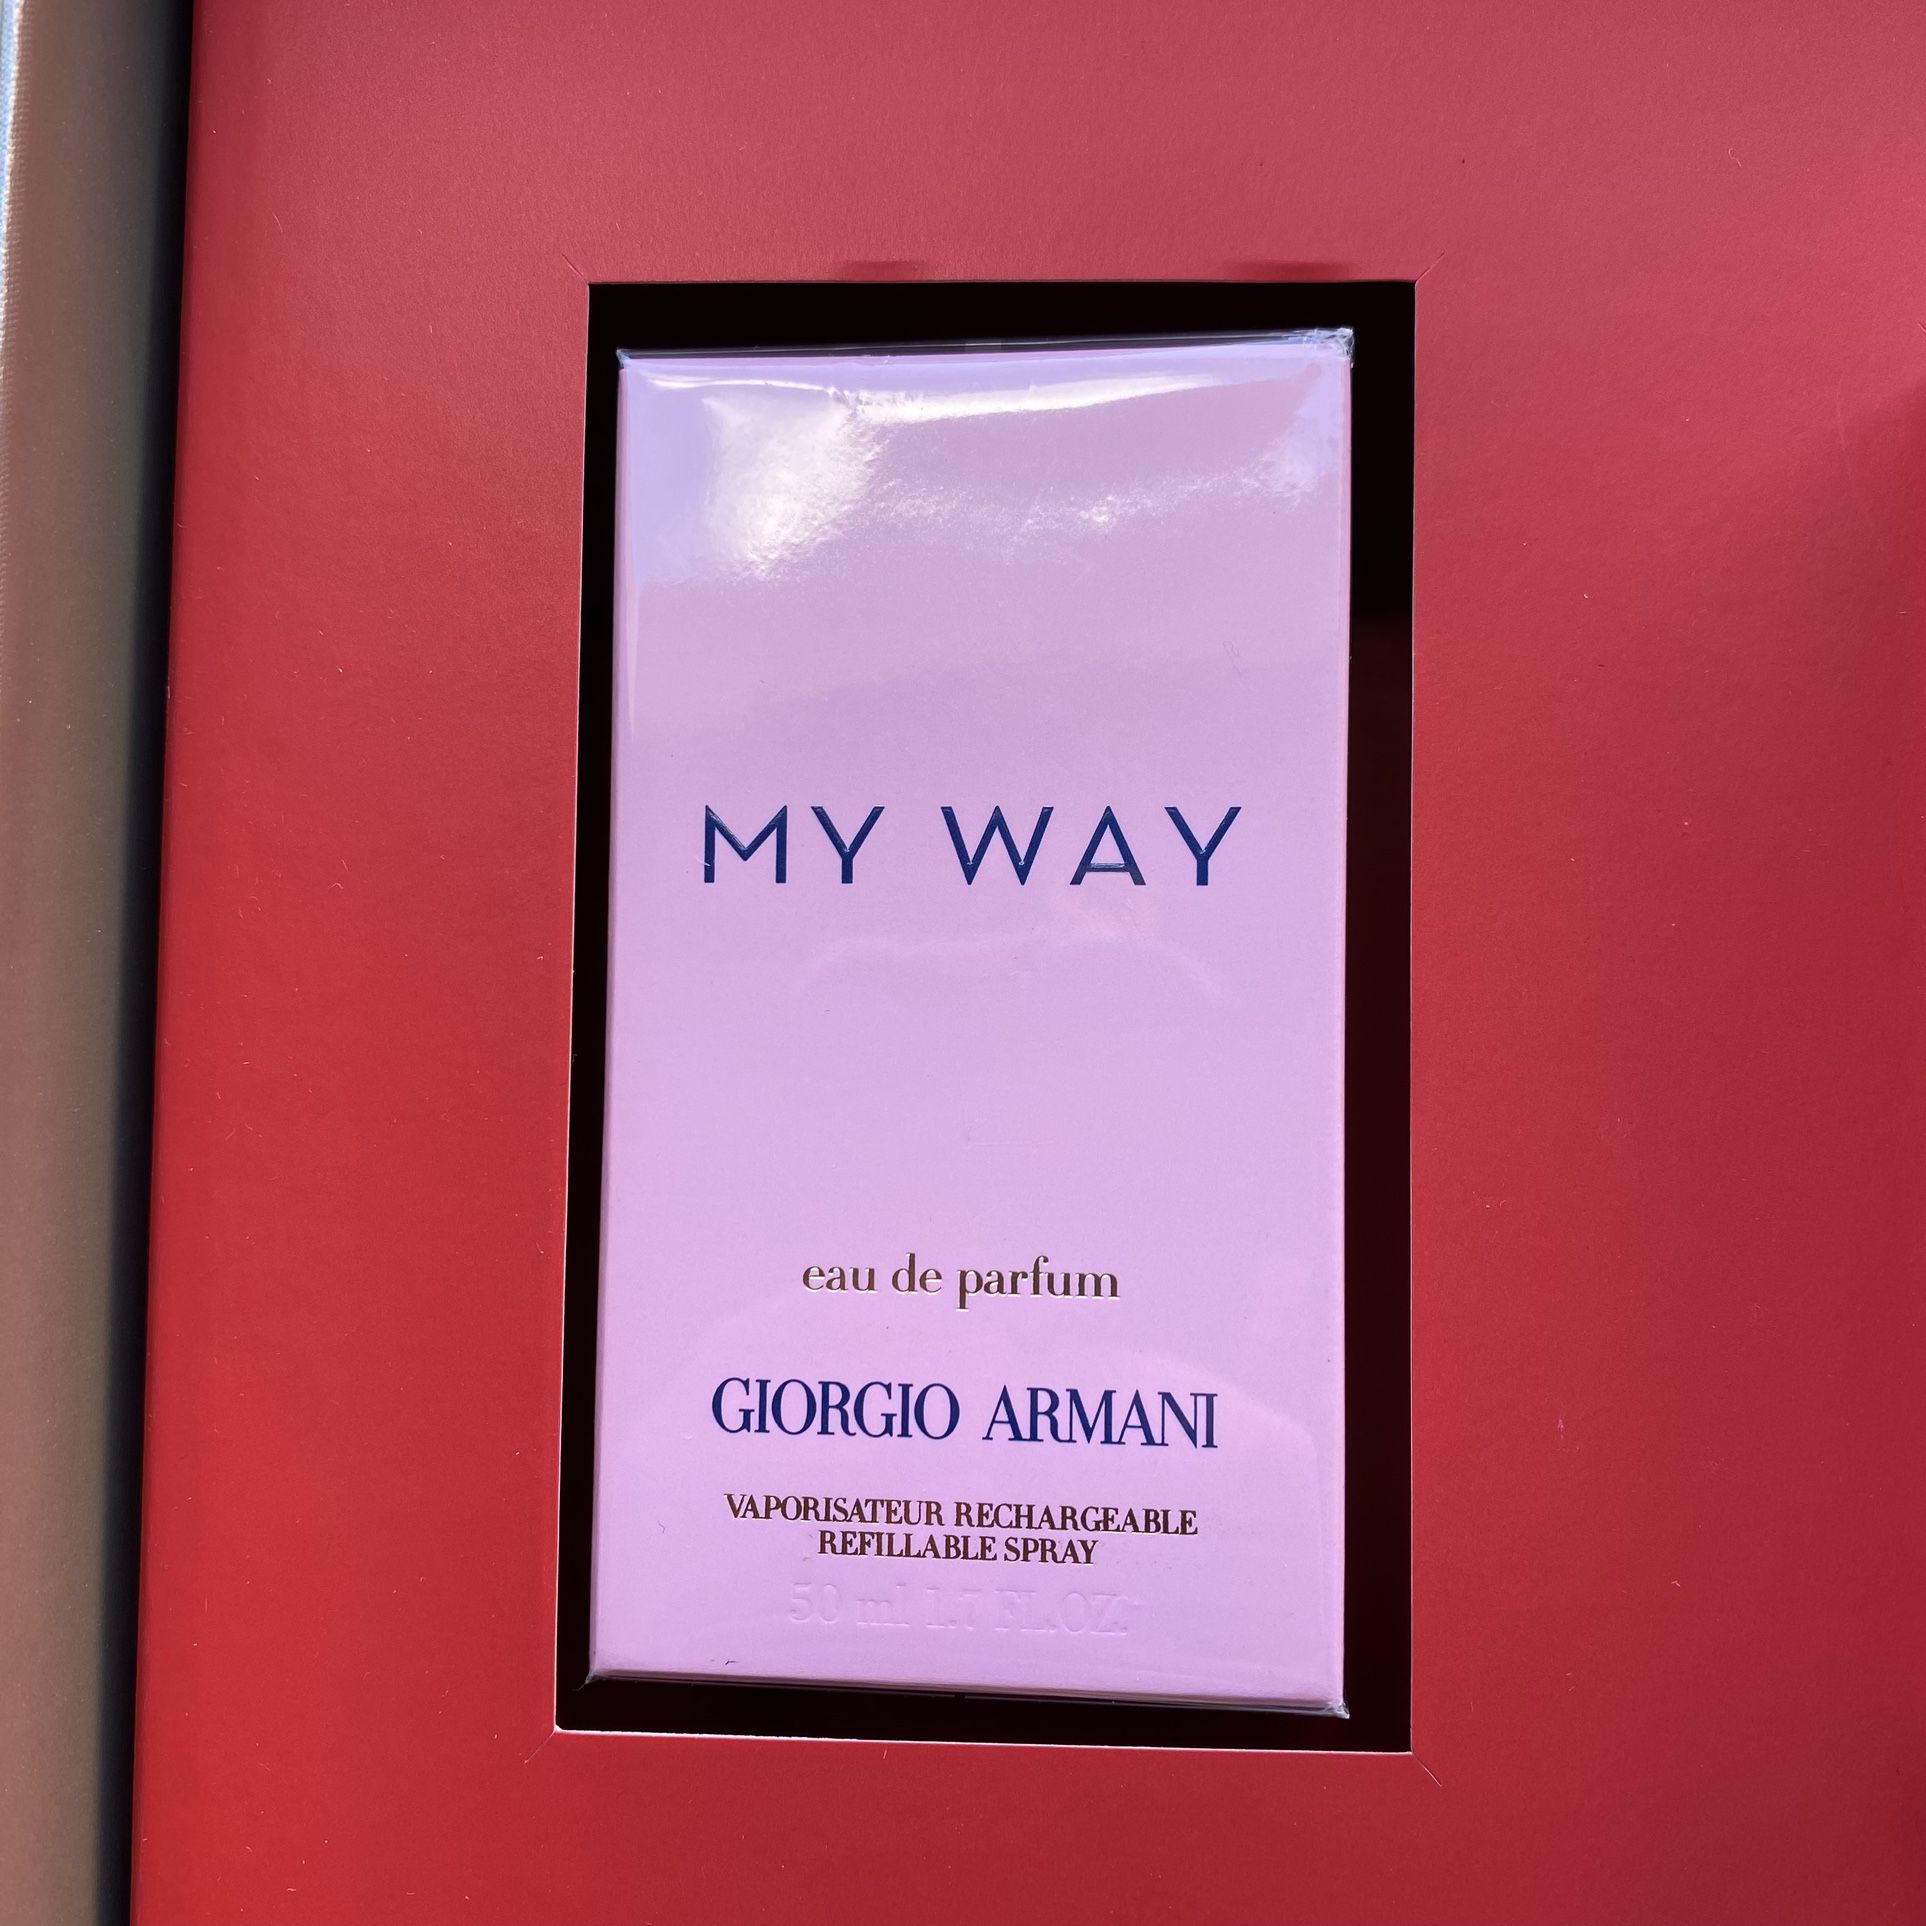 Giorgio Armani Gift Set Women’s “My Way” Perfume 3oz With Travel 0.5oz